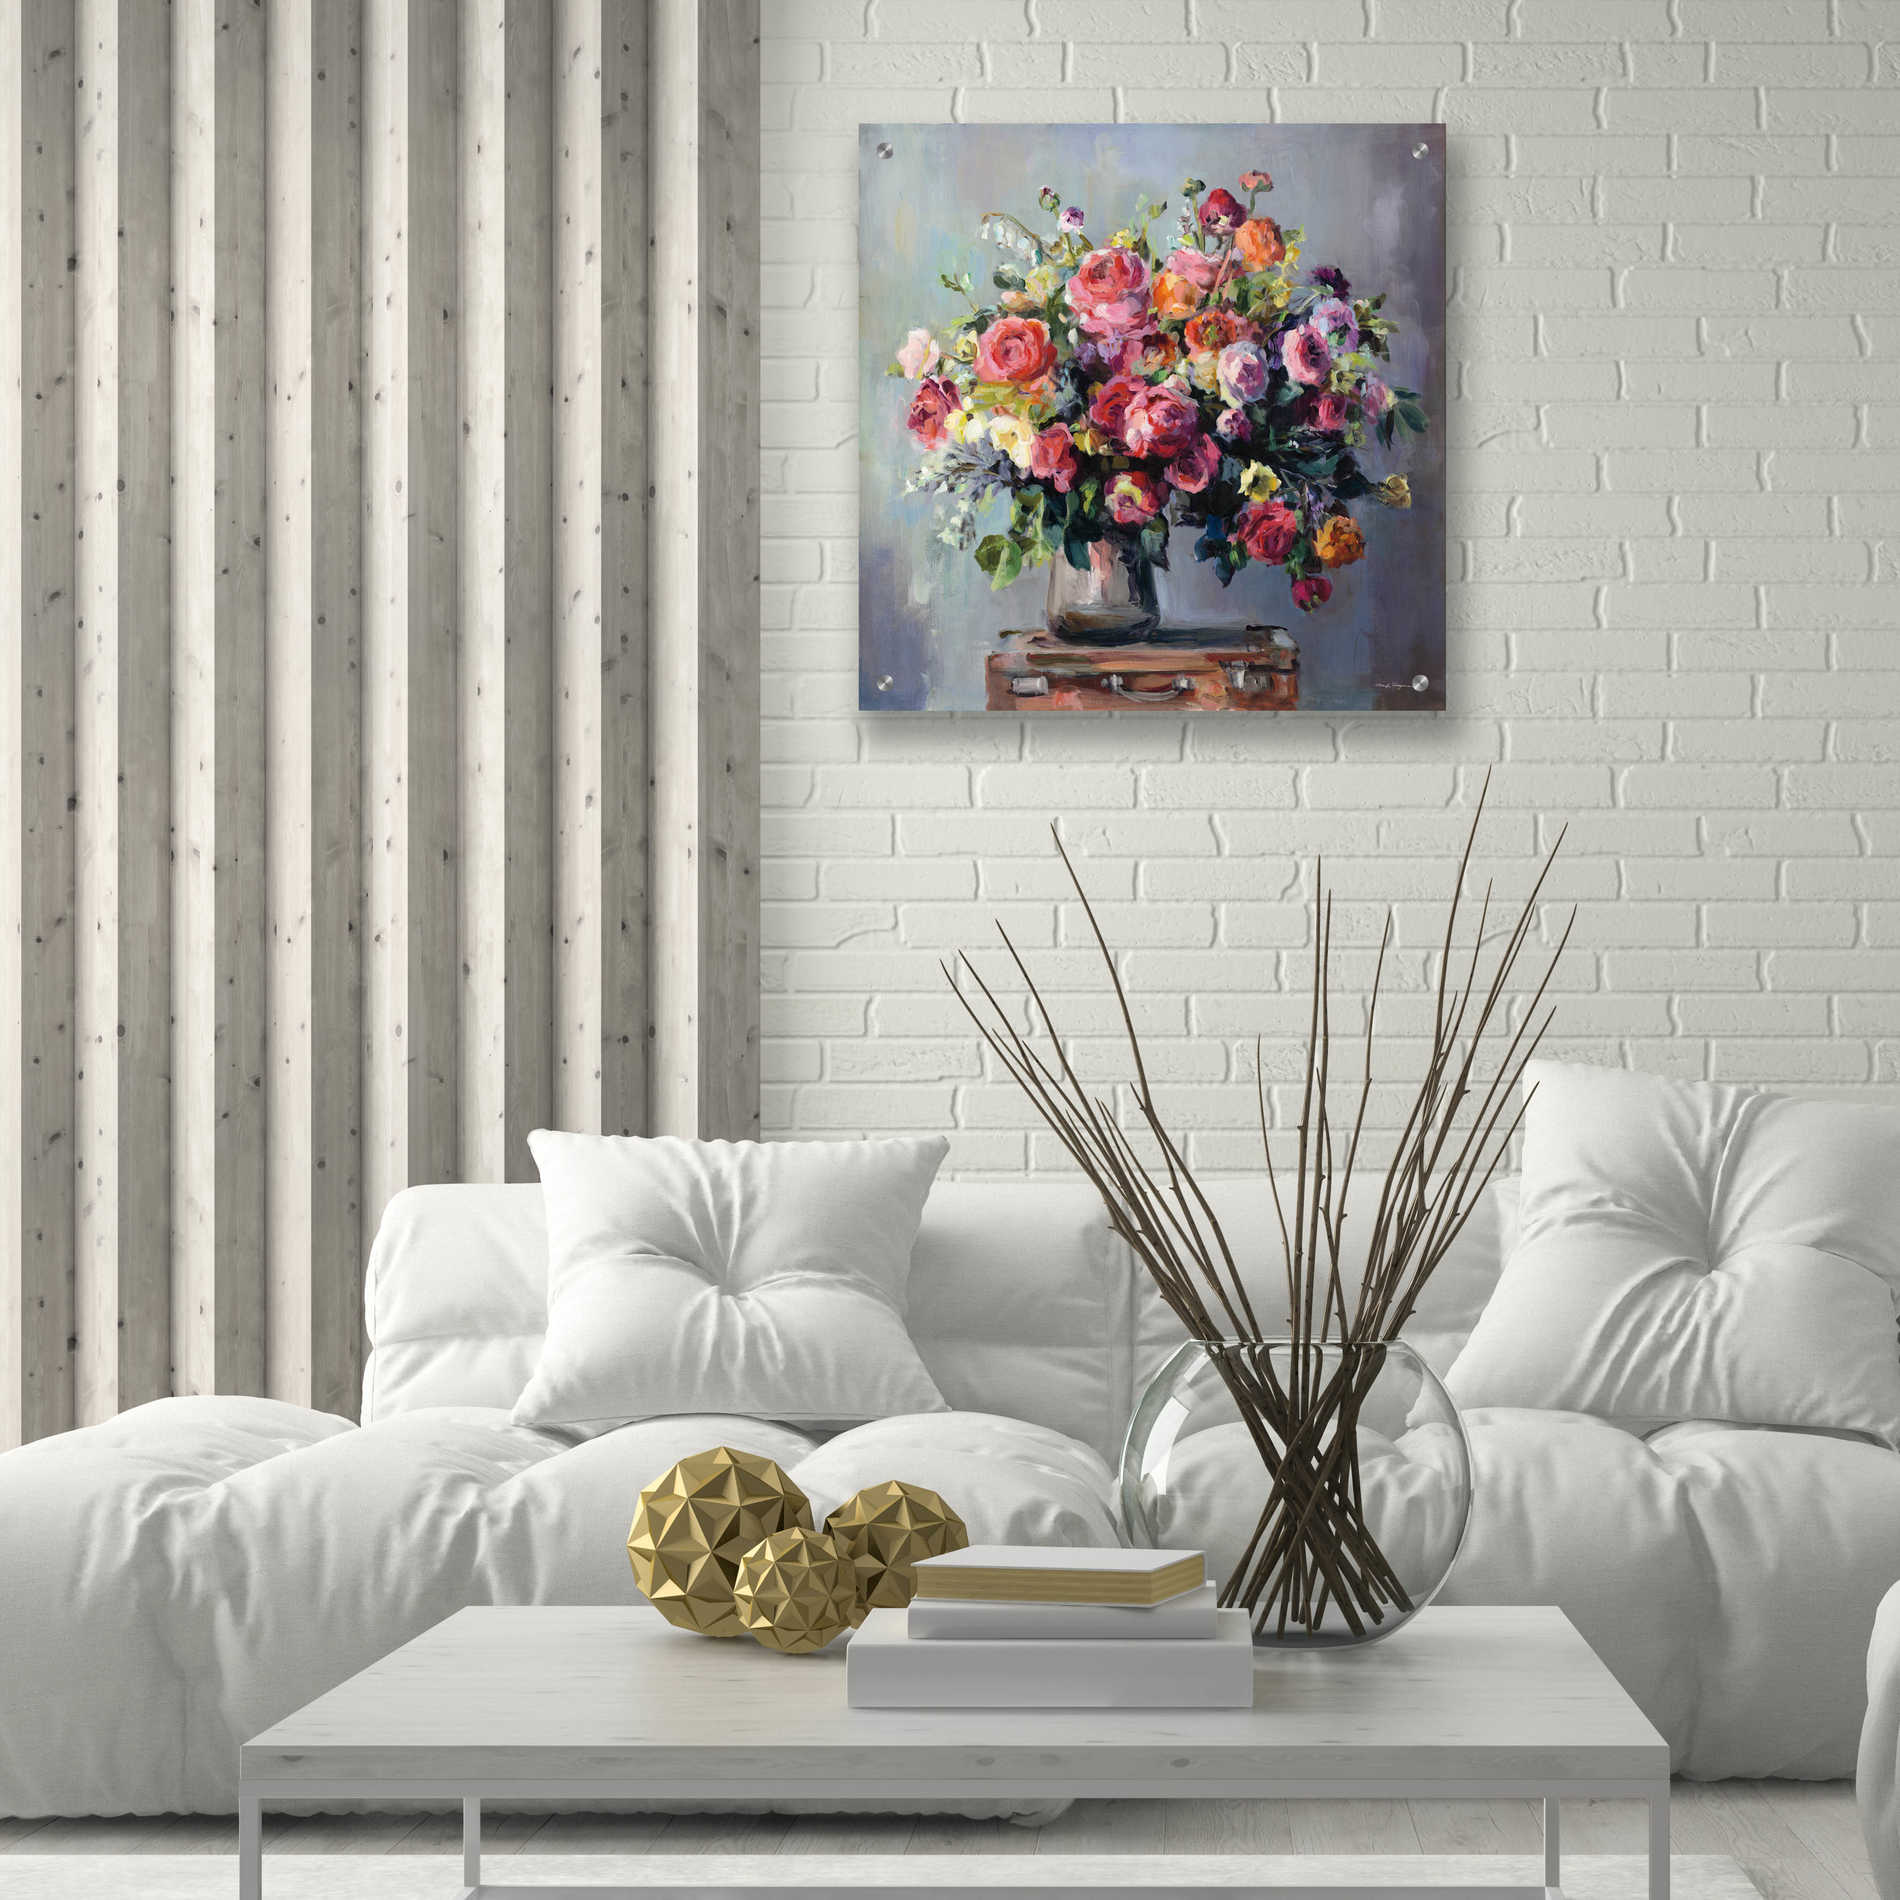 Epic Art 'Abundant Bouquet' by Marilyn Hageman, Acrylic Glass Wall Art,24x24